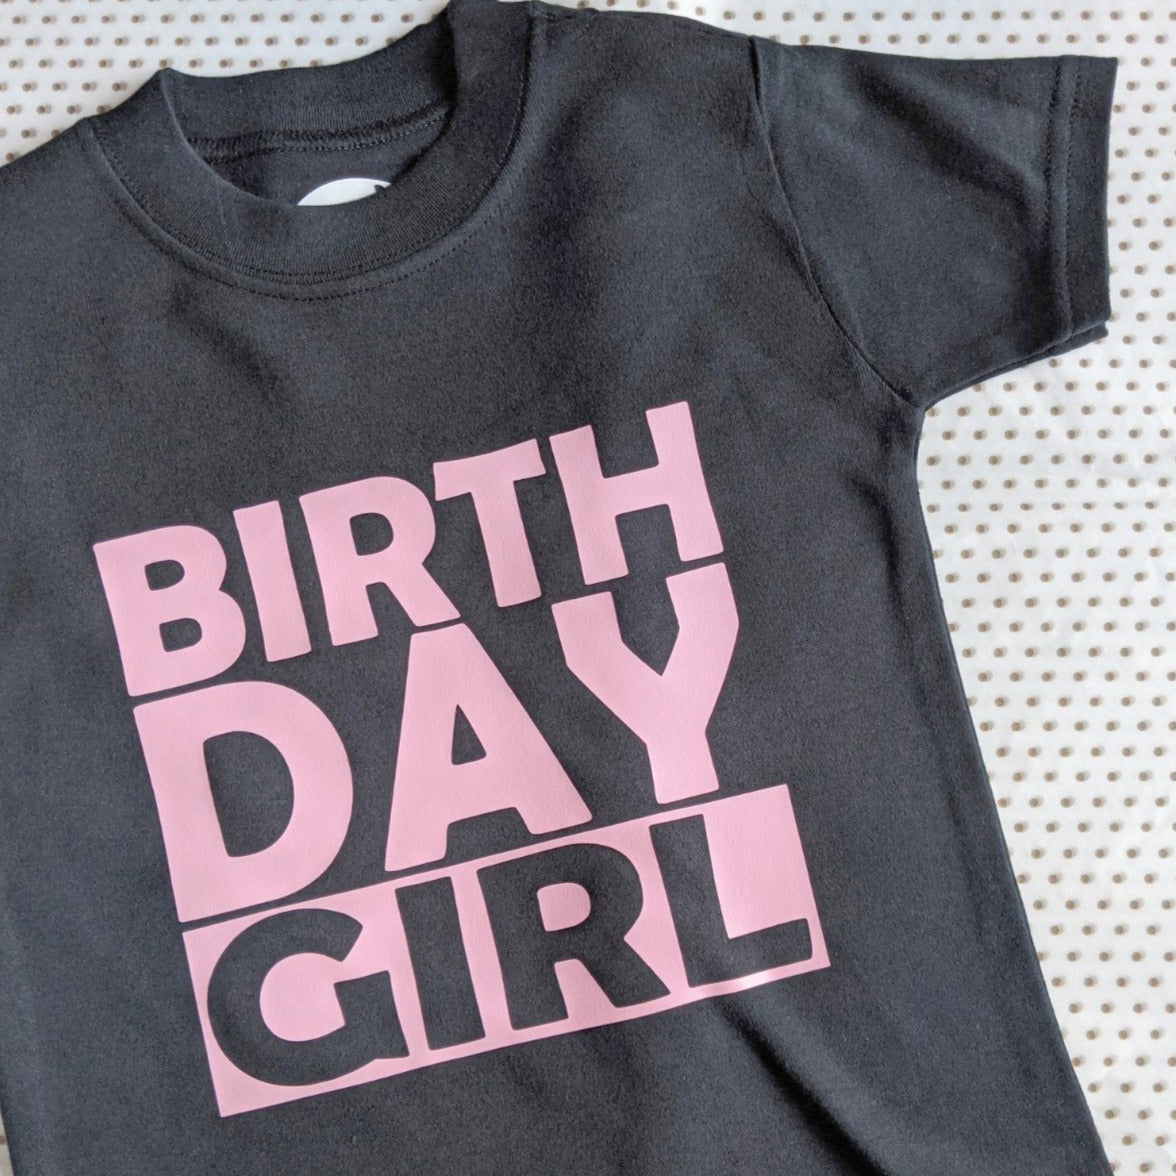 Birthday Girl tshirt - black tshirt with pink print